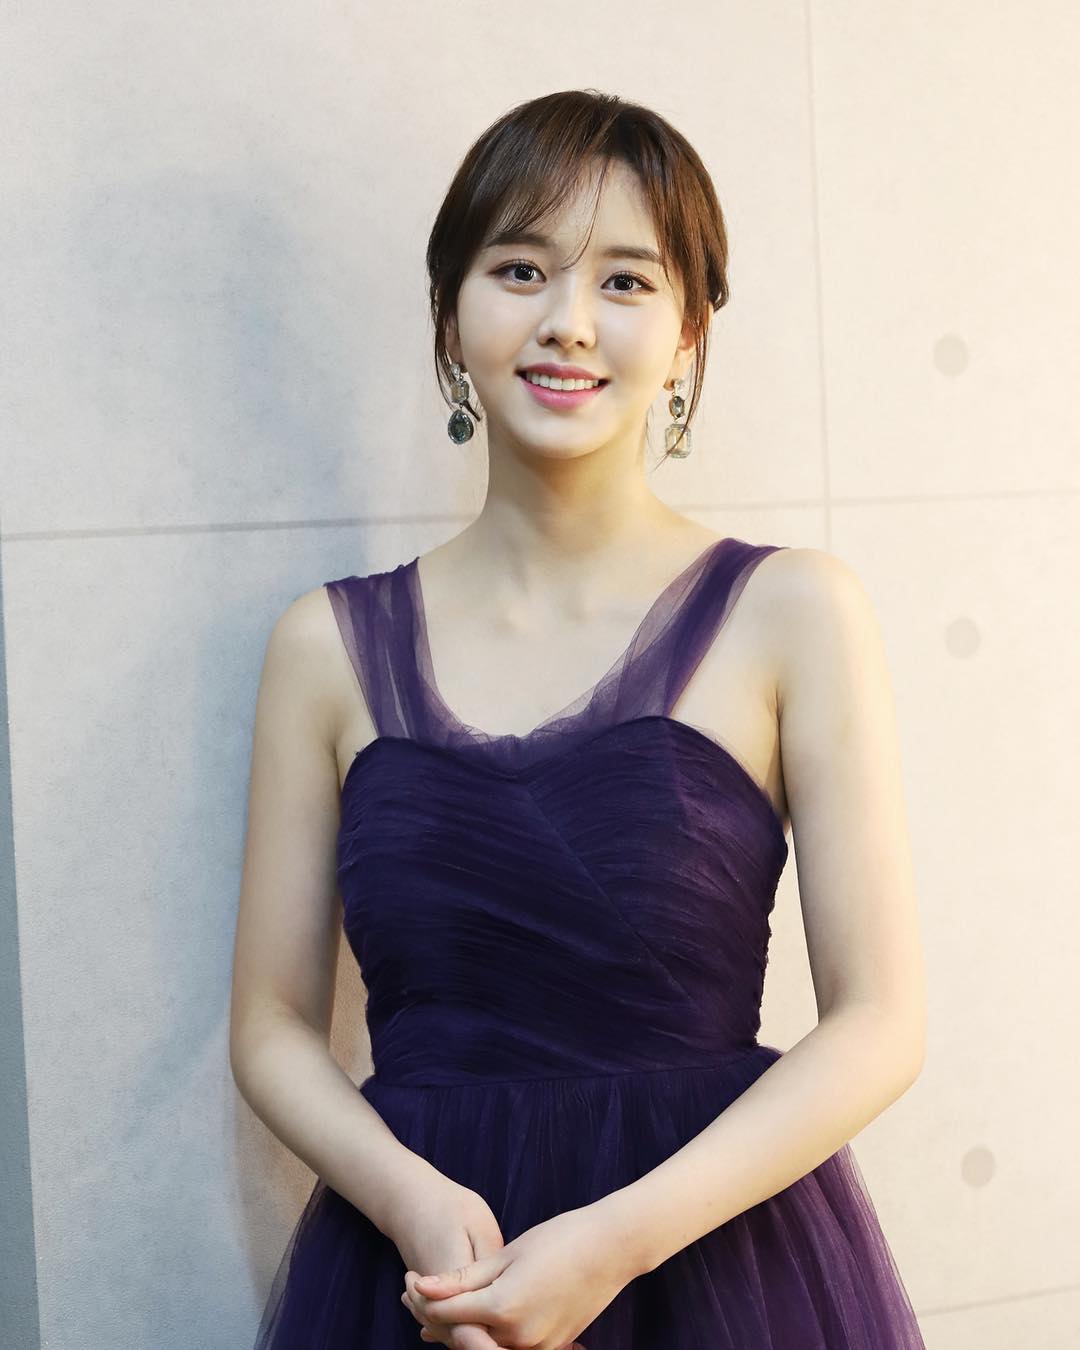 Kim So hyun south korean actress 5